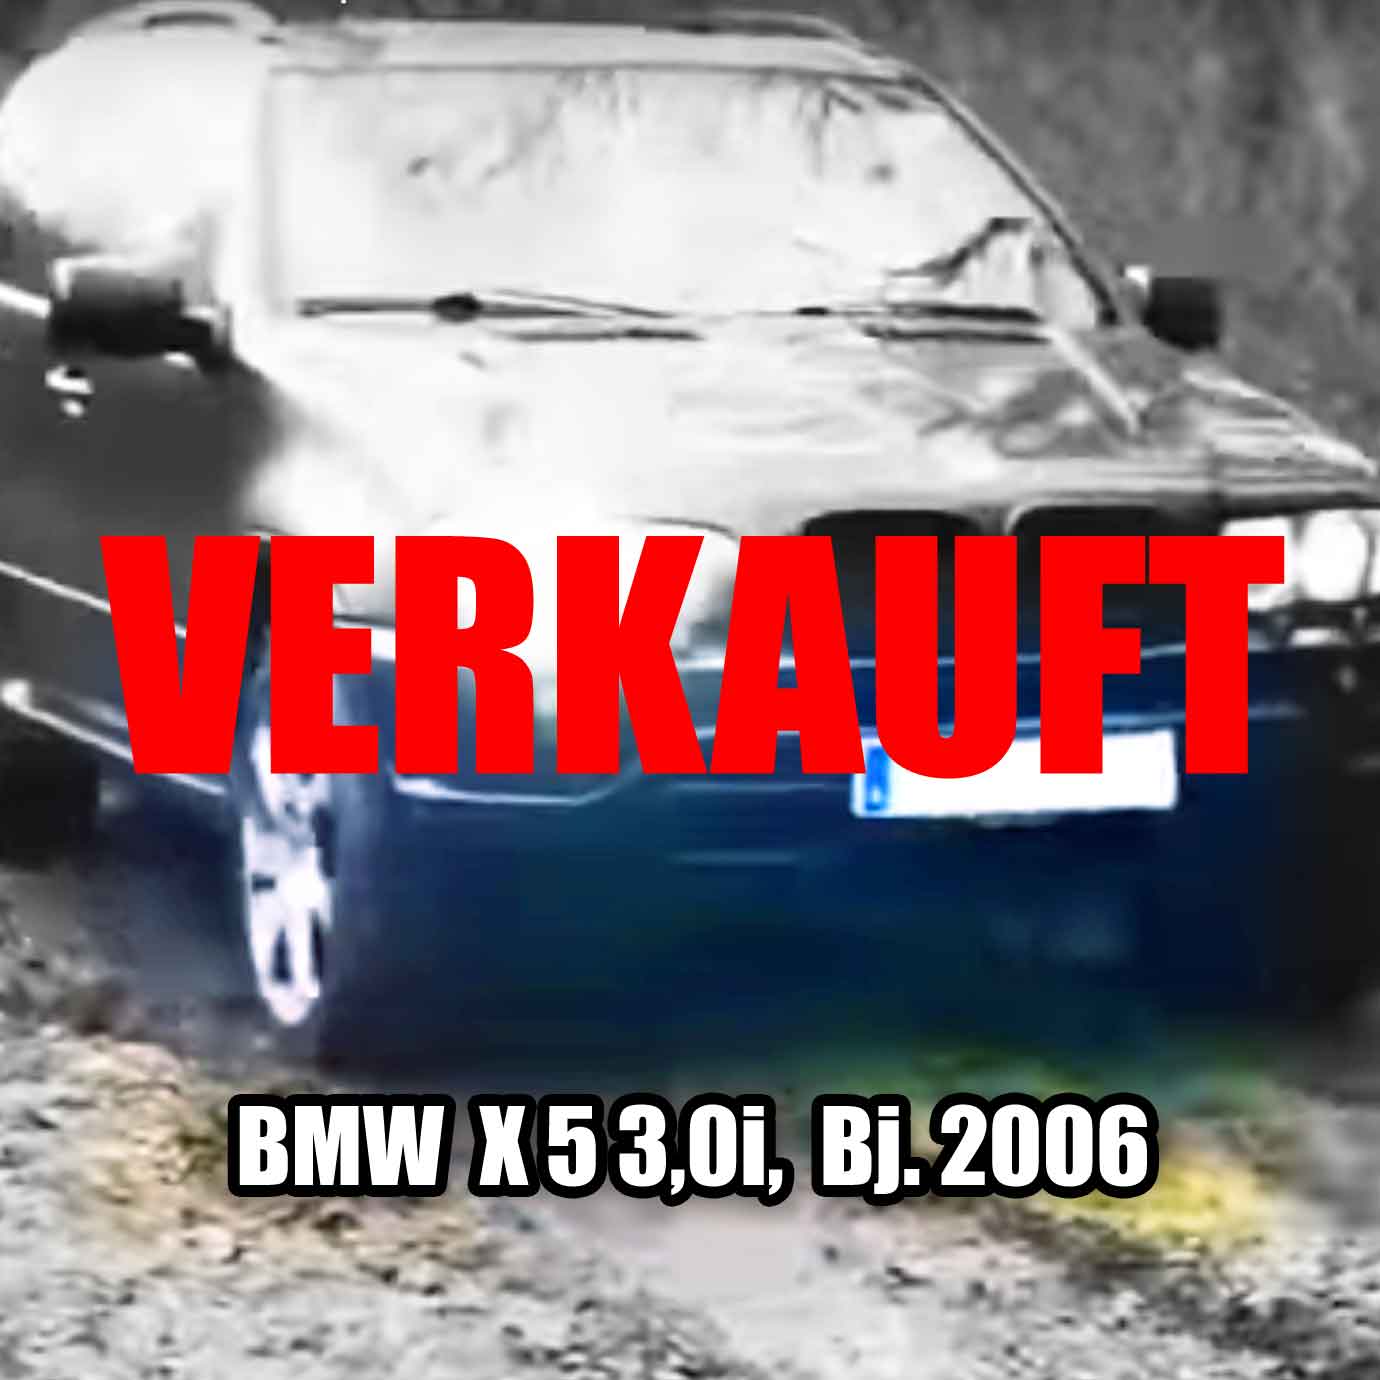 Speedfaktor Autobörse, BMW X-5 3,0i